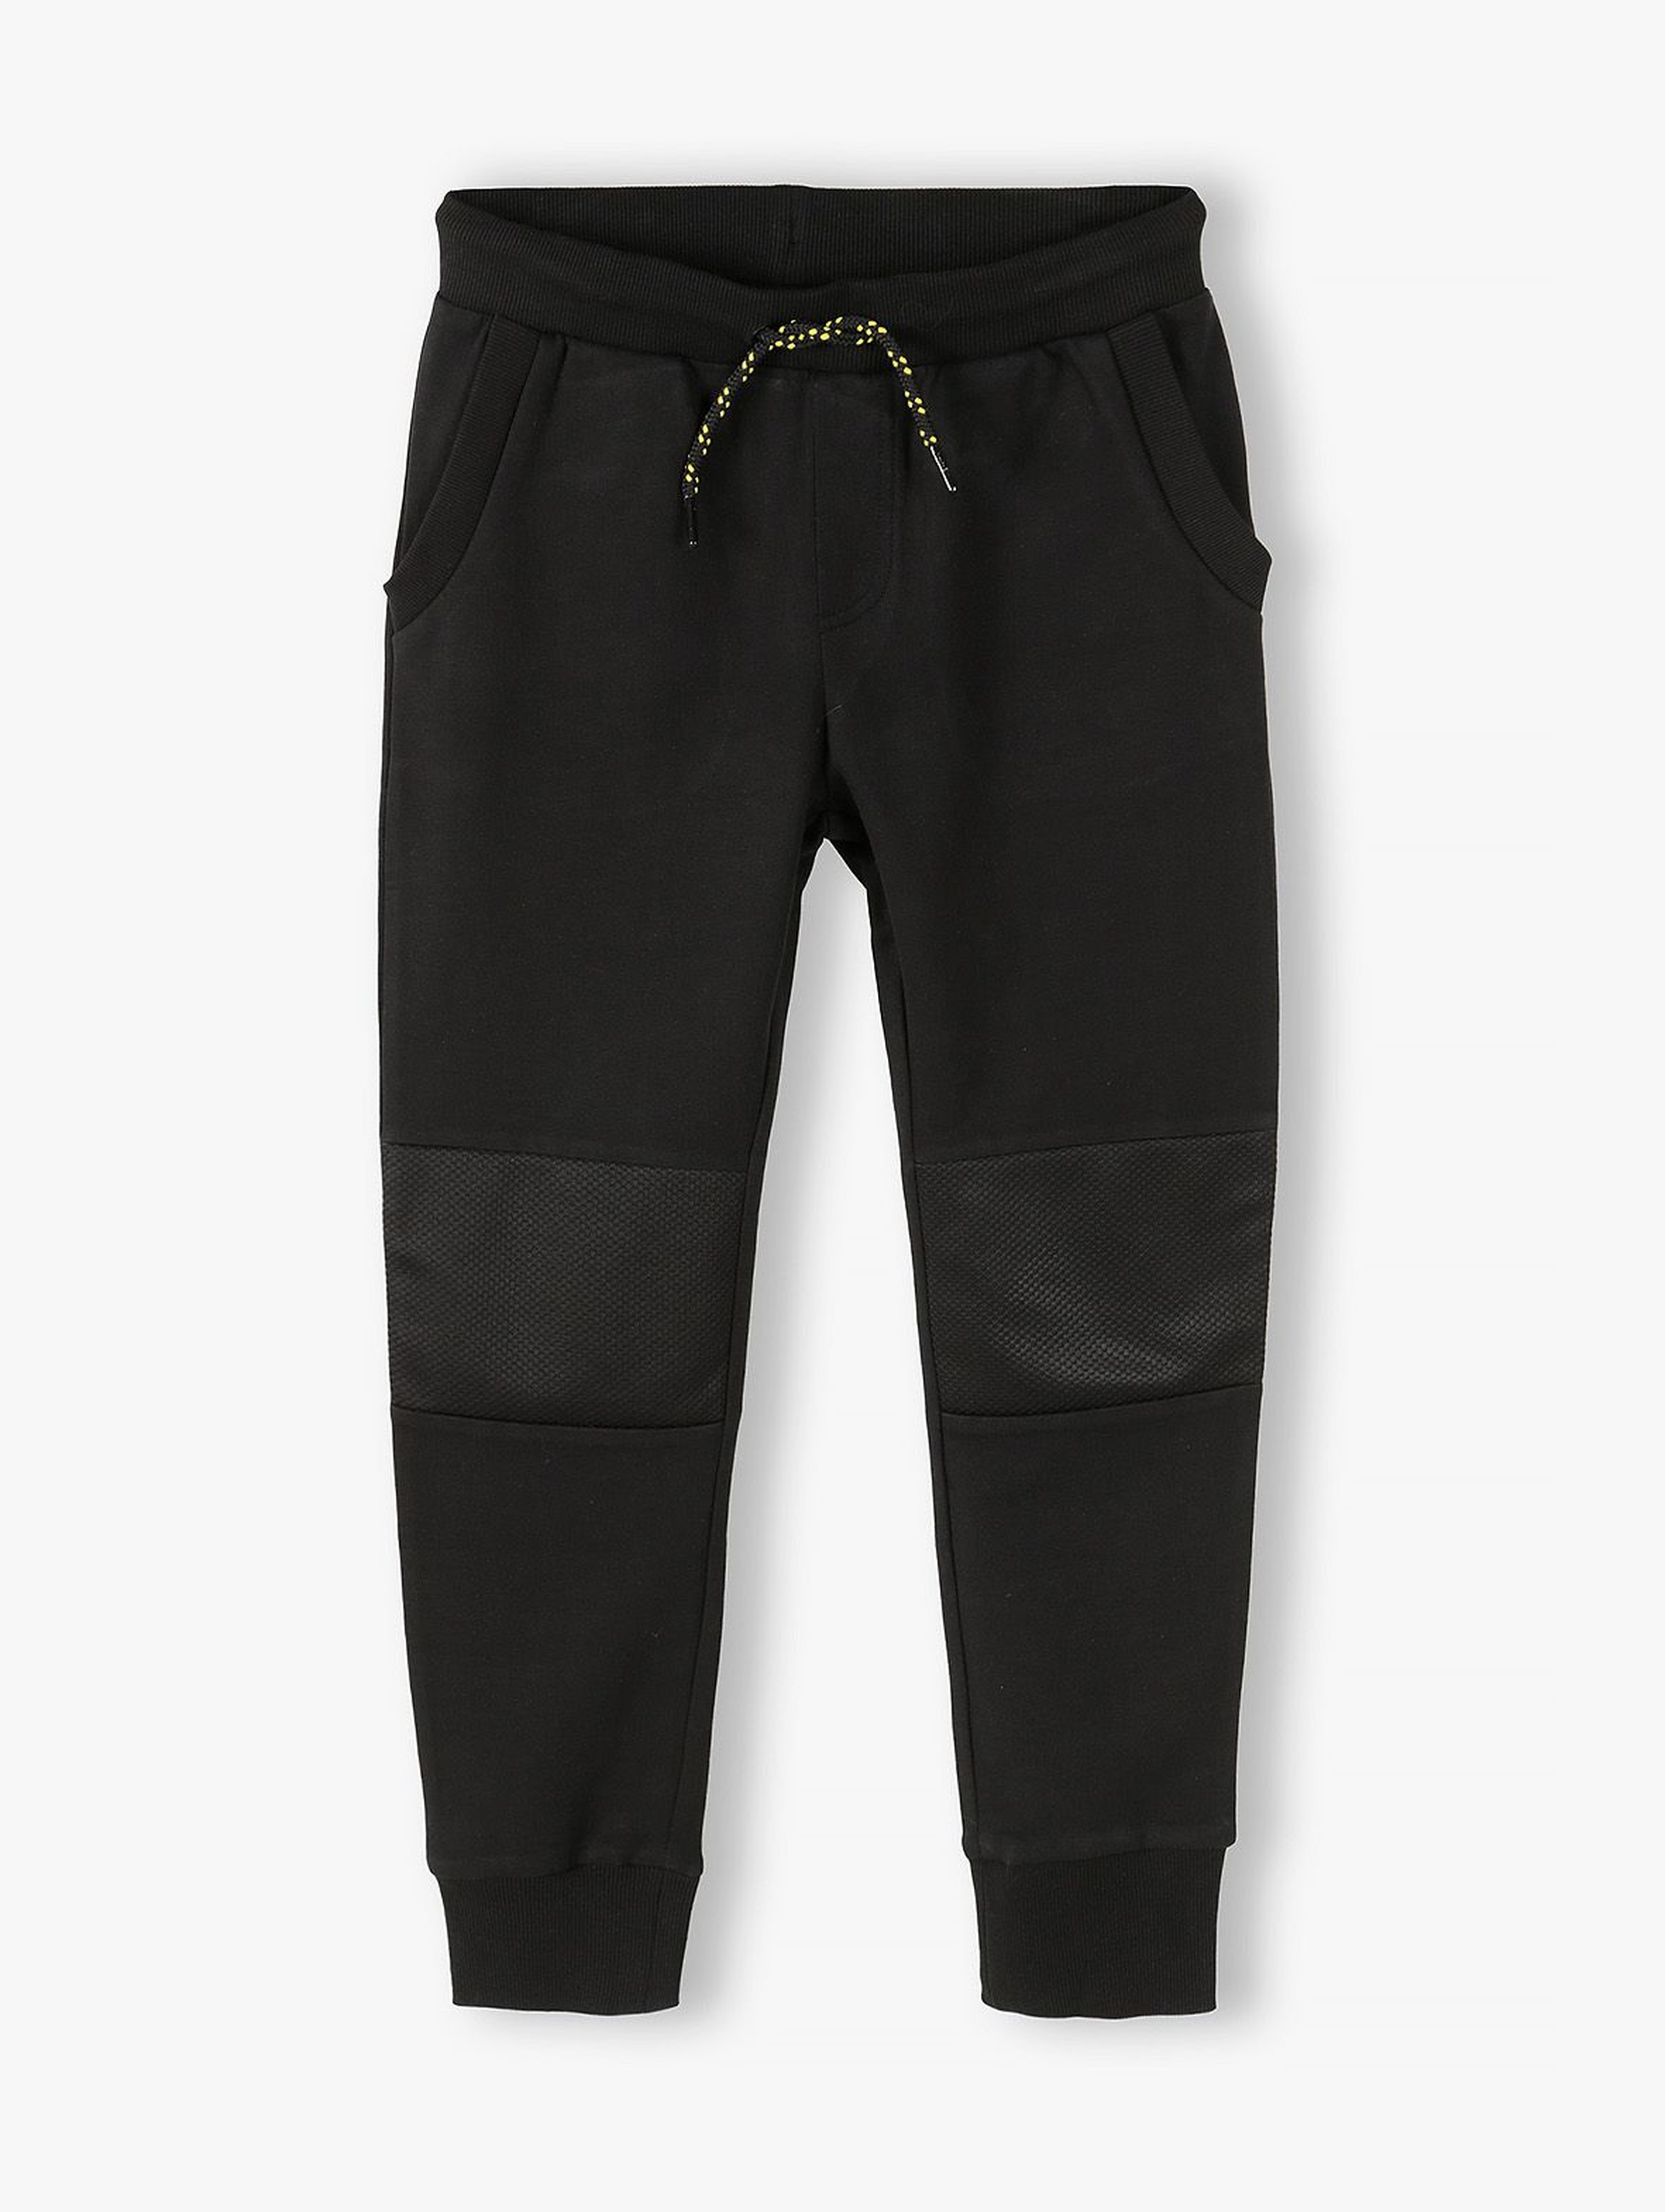 Bawełniane spodnie dresowe chłopięce w kolorze czarnym